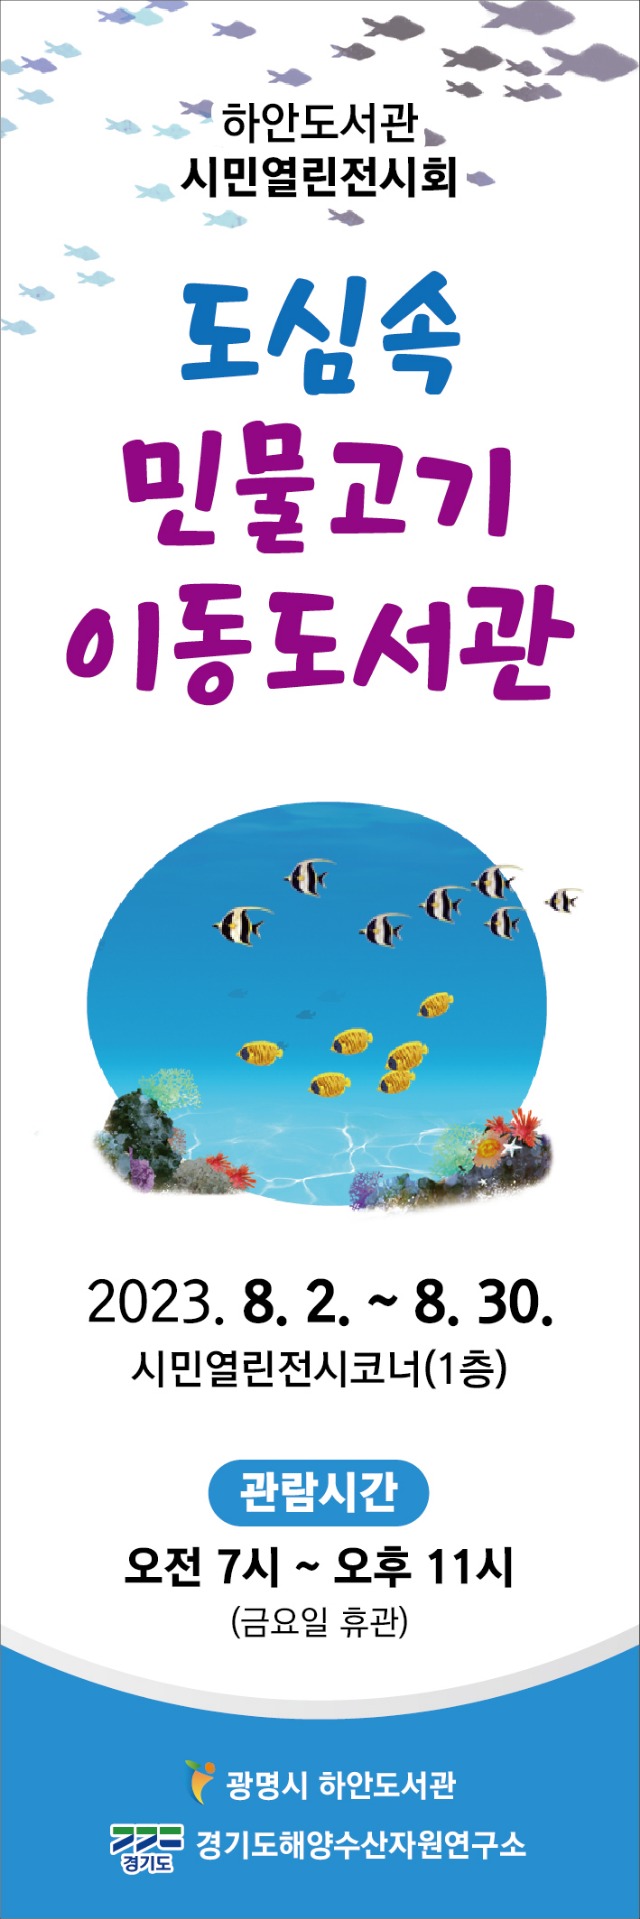 하안도서관-8월+시민열린전시회(물고기이동도서관).jpg